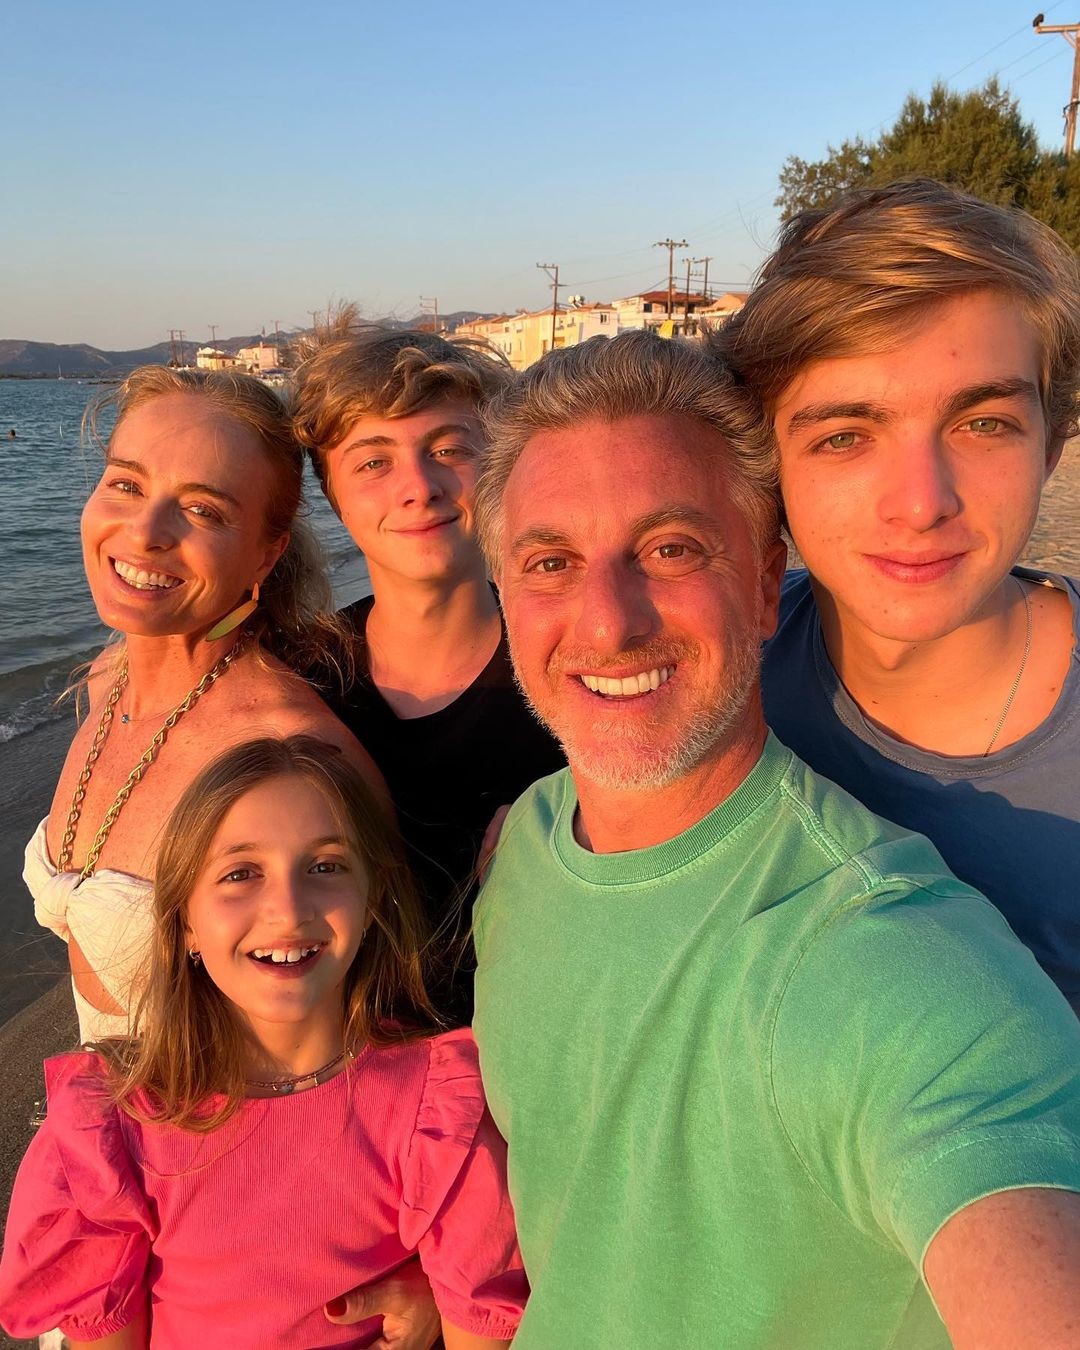 Angélica posta foto em família e chama atenção da web: "Pisquei e os filhos estão enormes" — Foto: Instagram